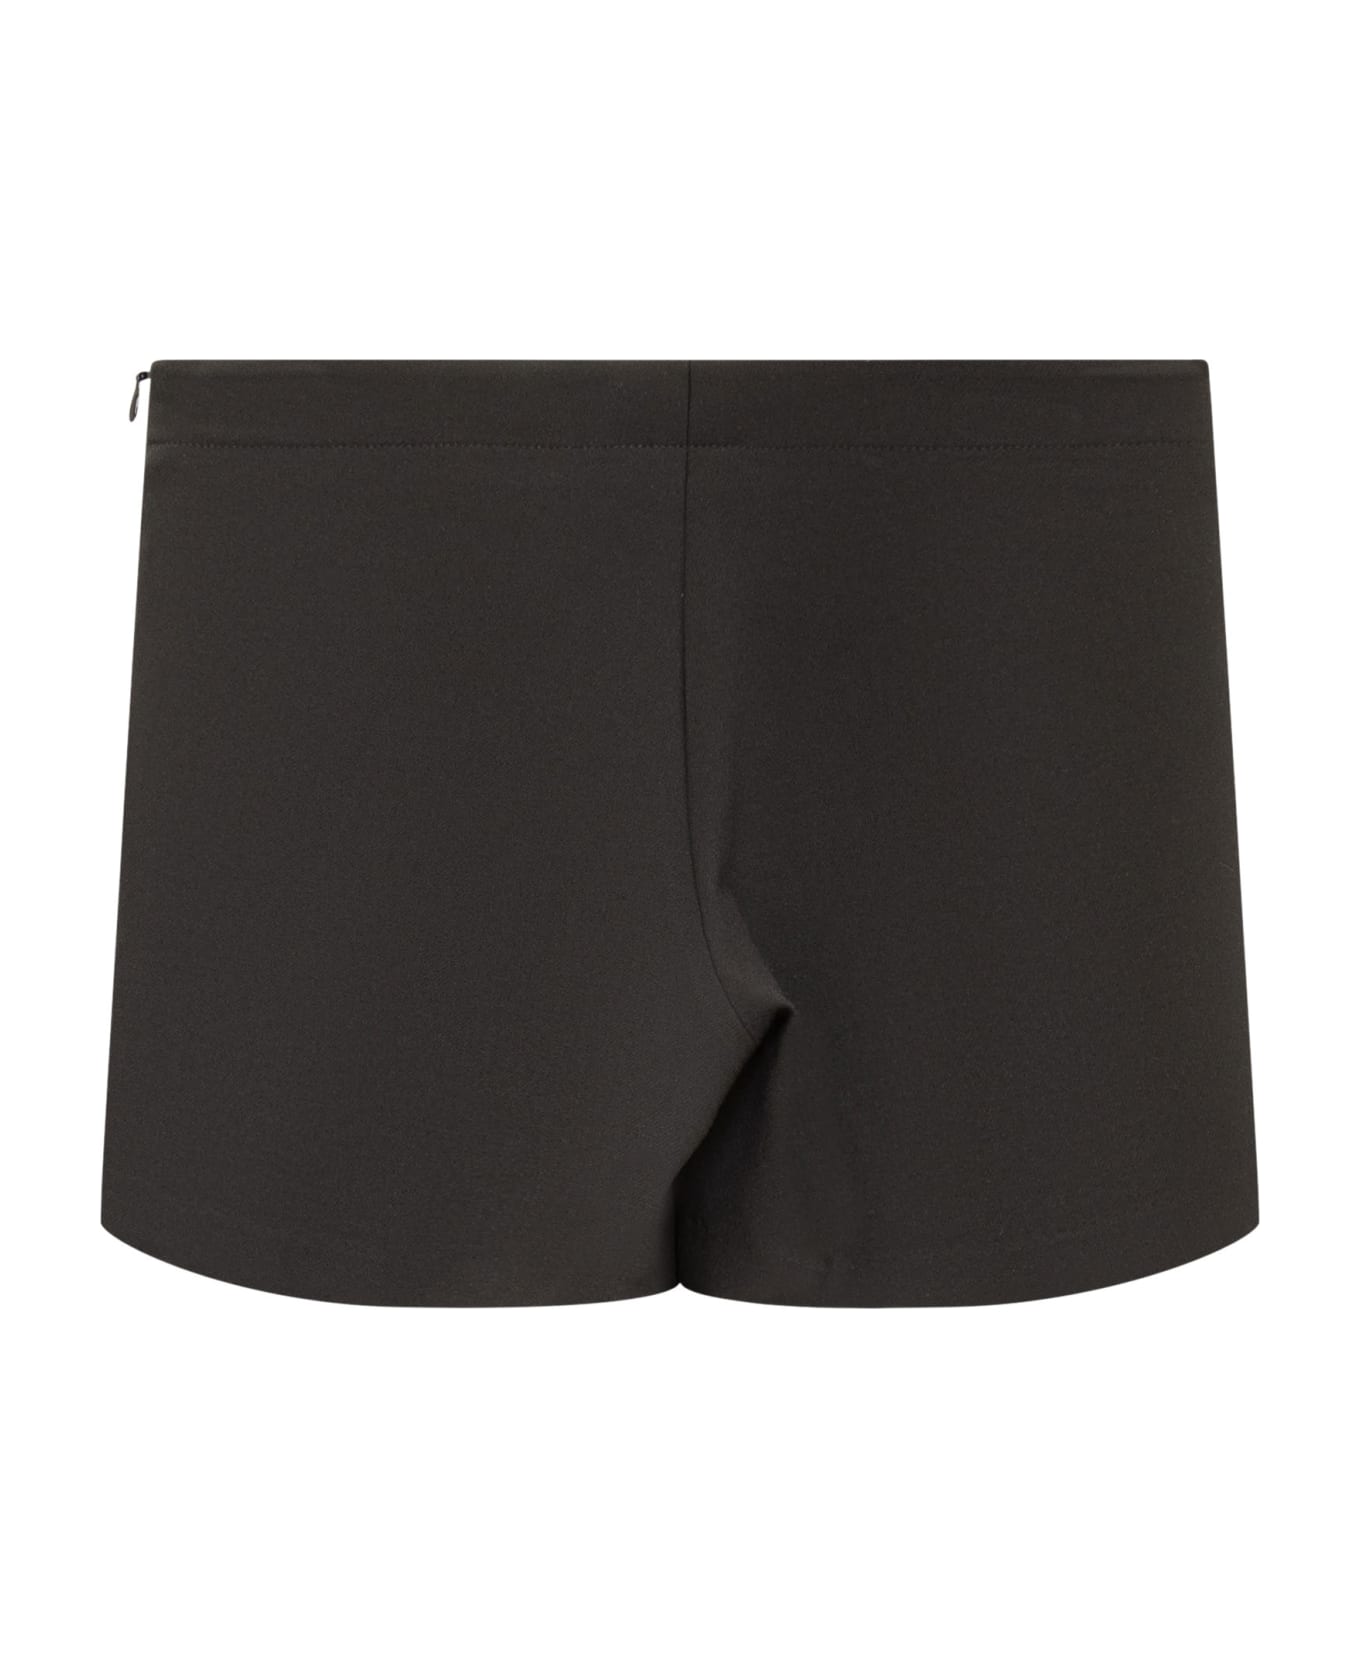 Versace Skirt Shorts - NERO ボトムス